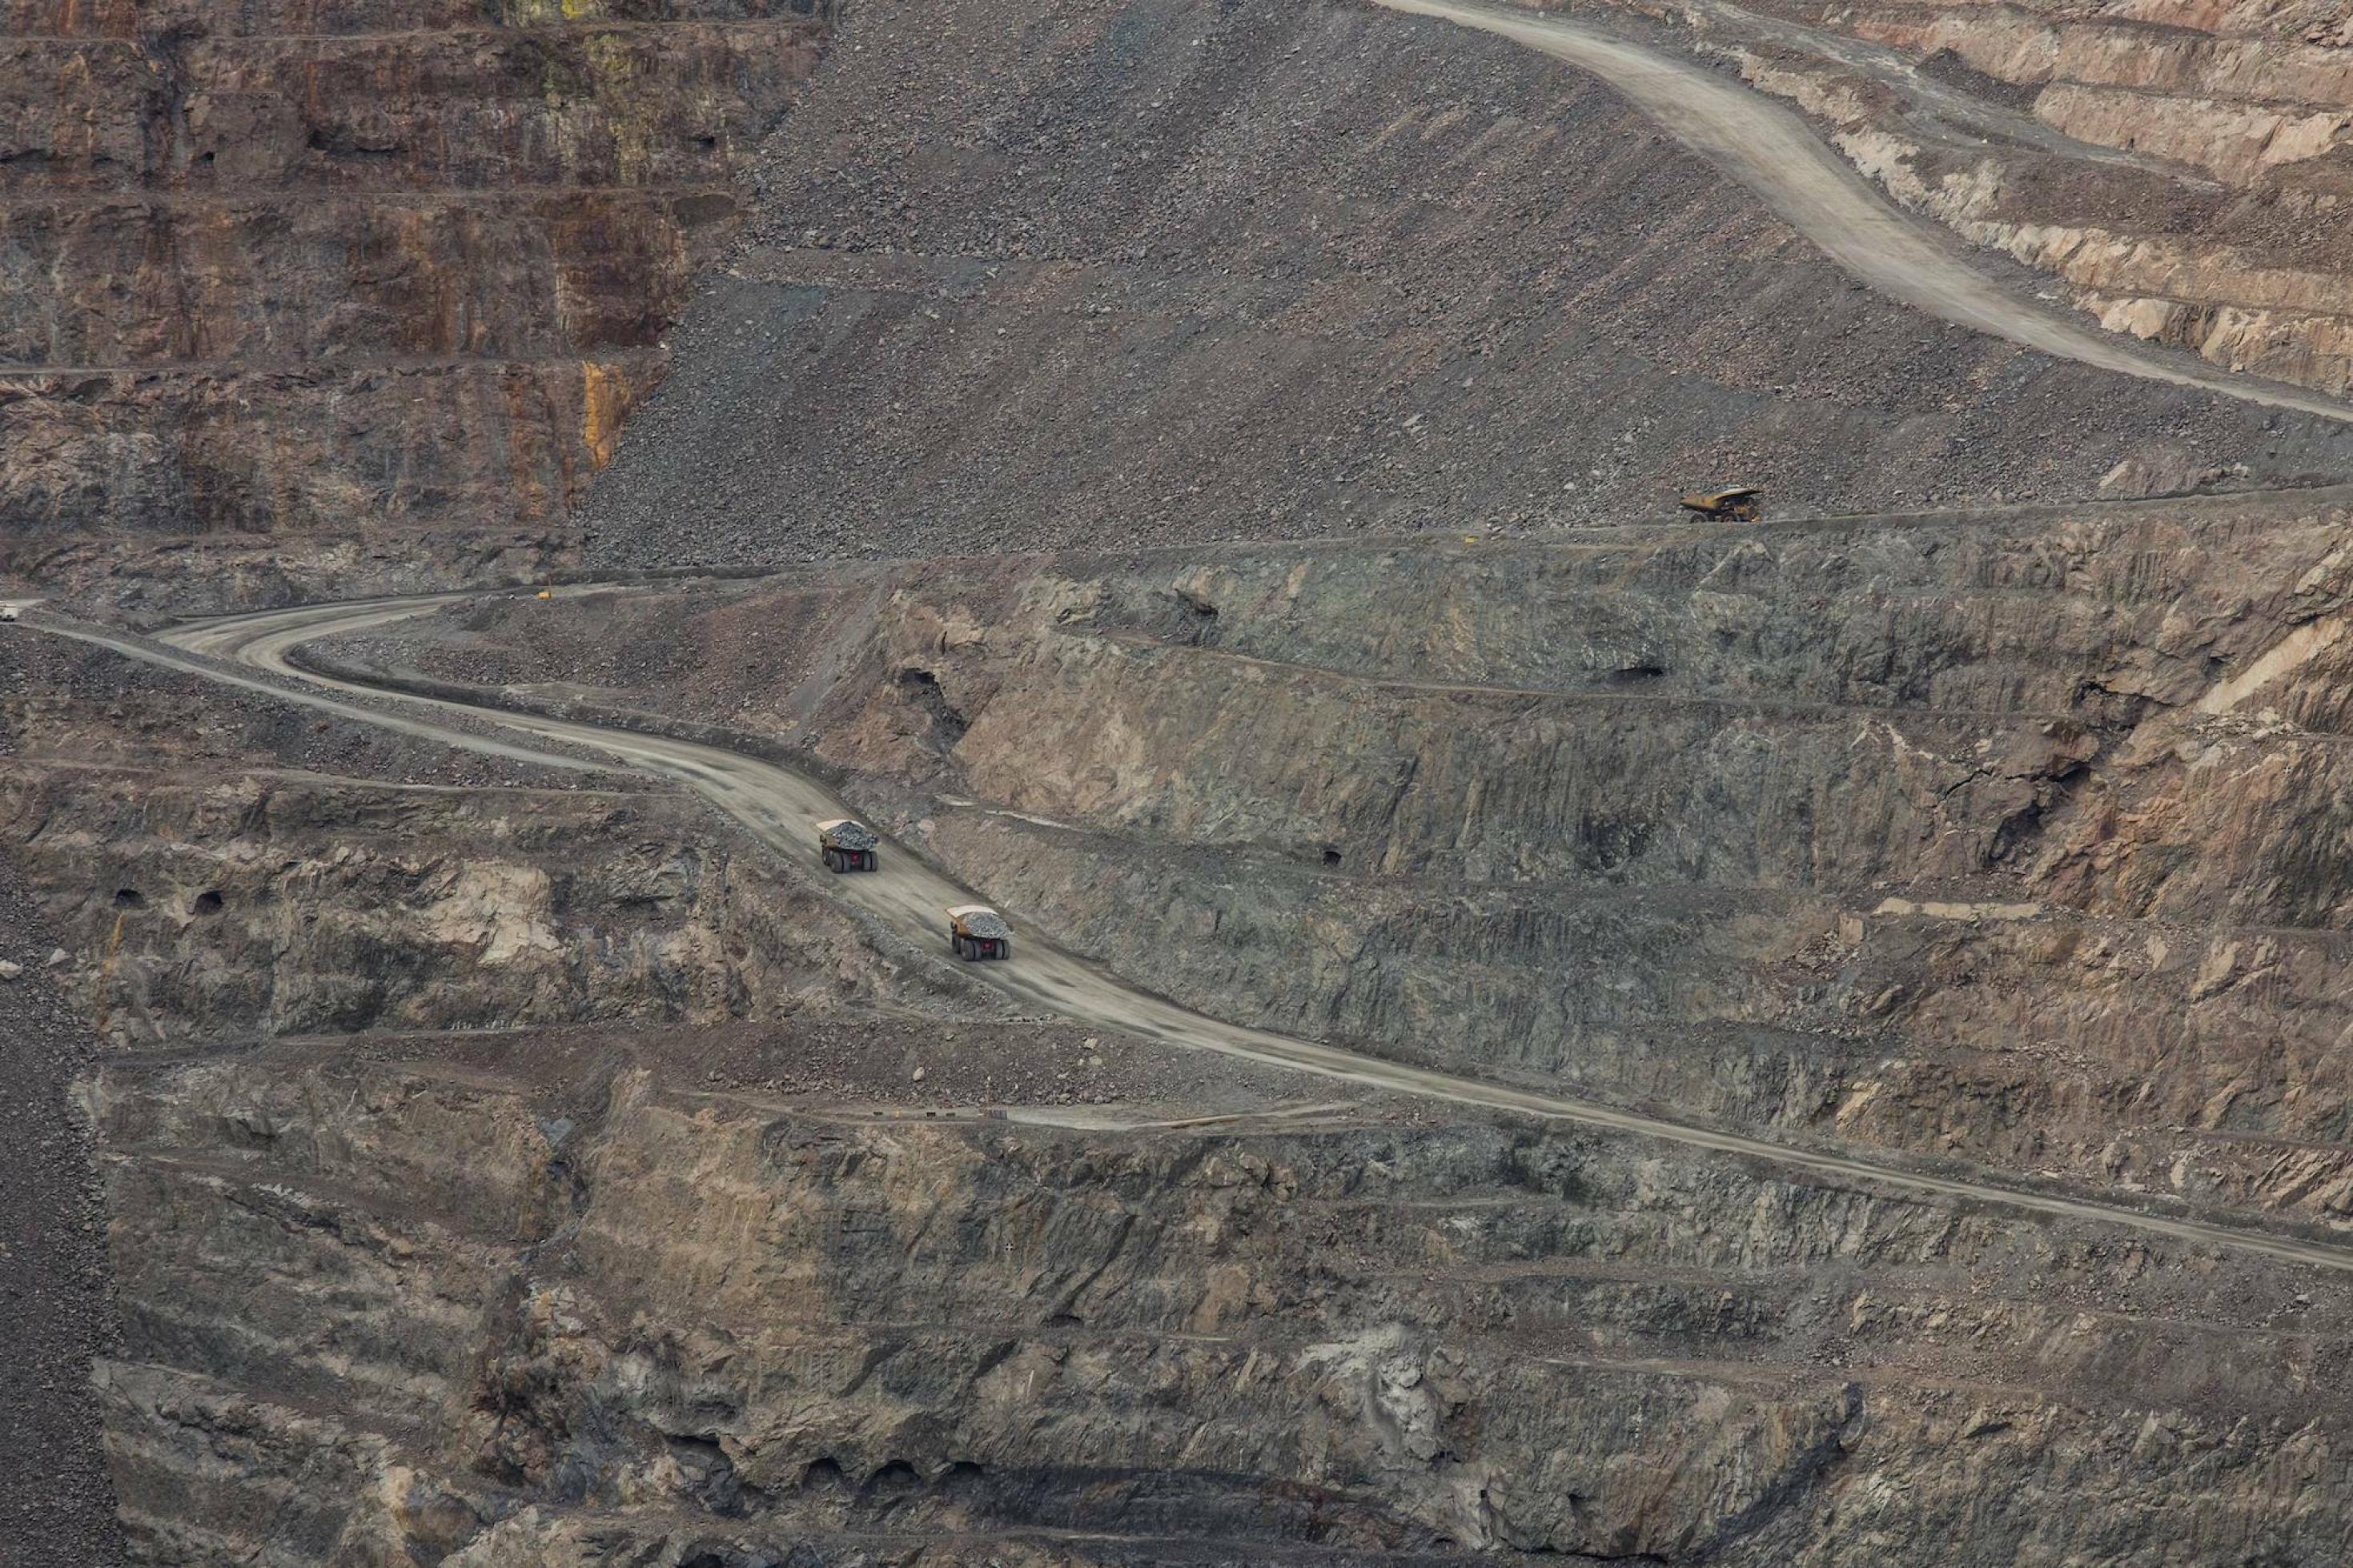 Das Bild zeigt die Kohlmine in der Fernansicht, ein riesiges Loch in der Landschaft, durch das zwei klein wirkende Lastwagen fahren.